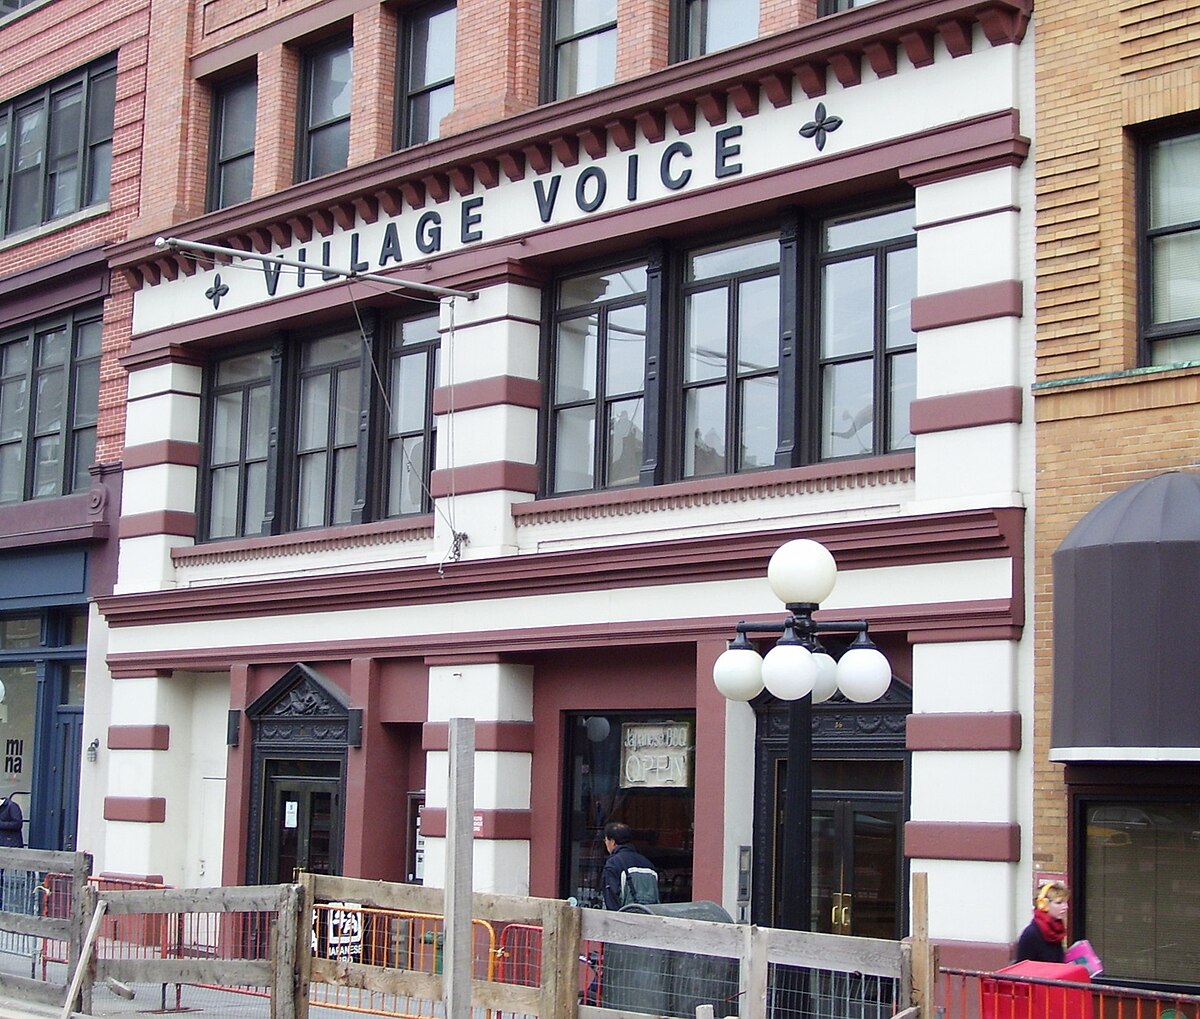 File Village Voice 36 Cooper Square Jpg Wikimedia Commons